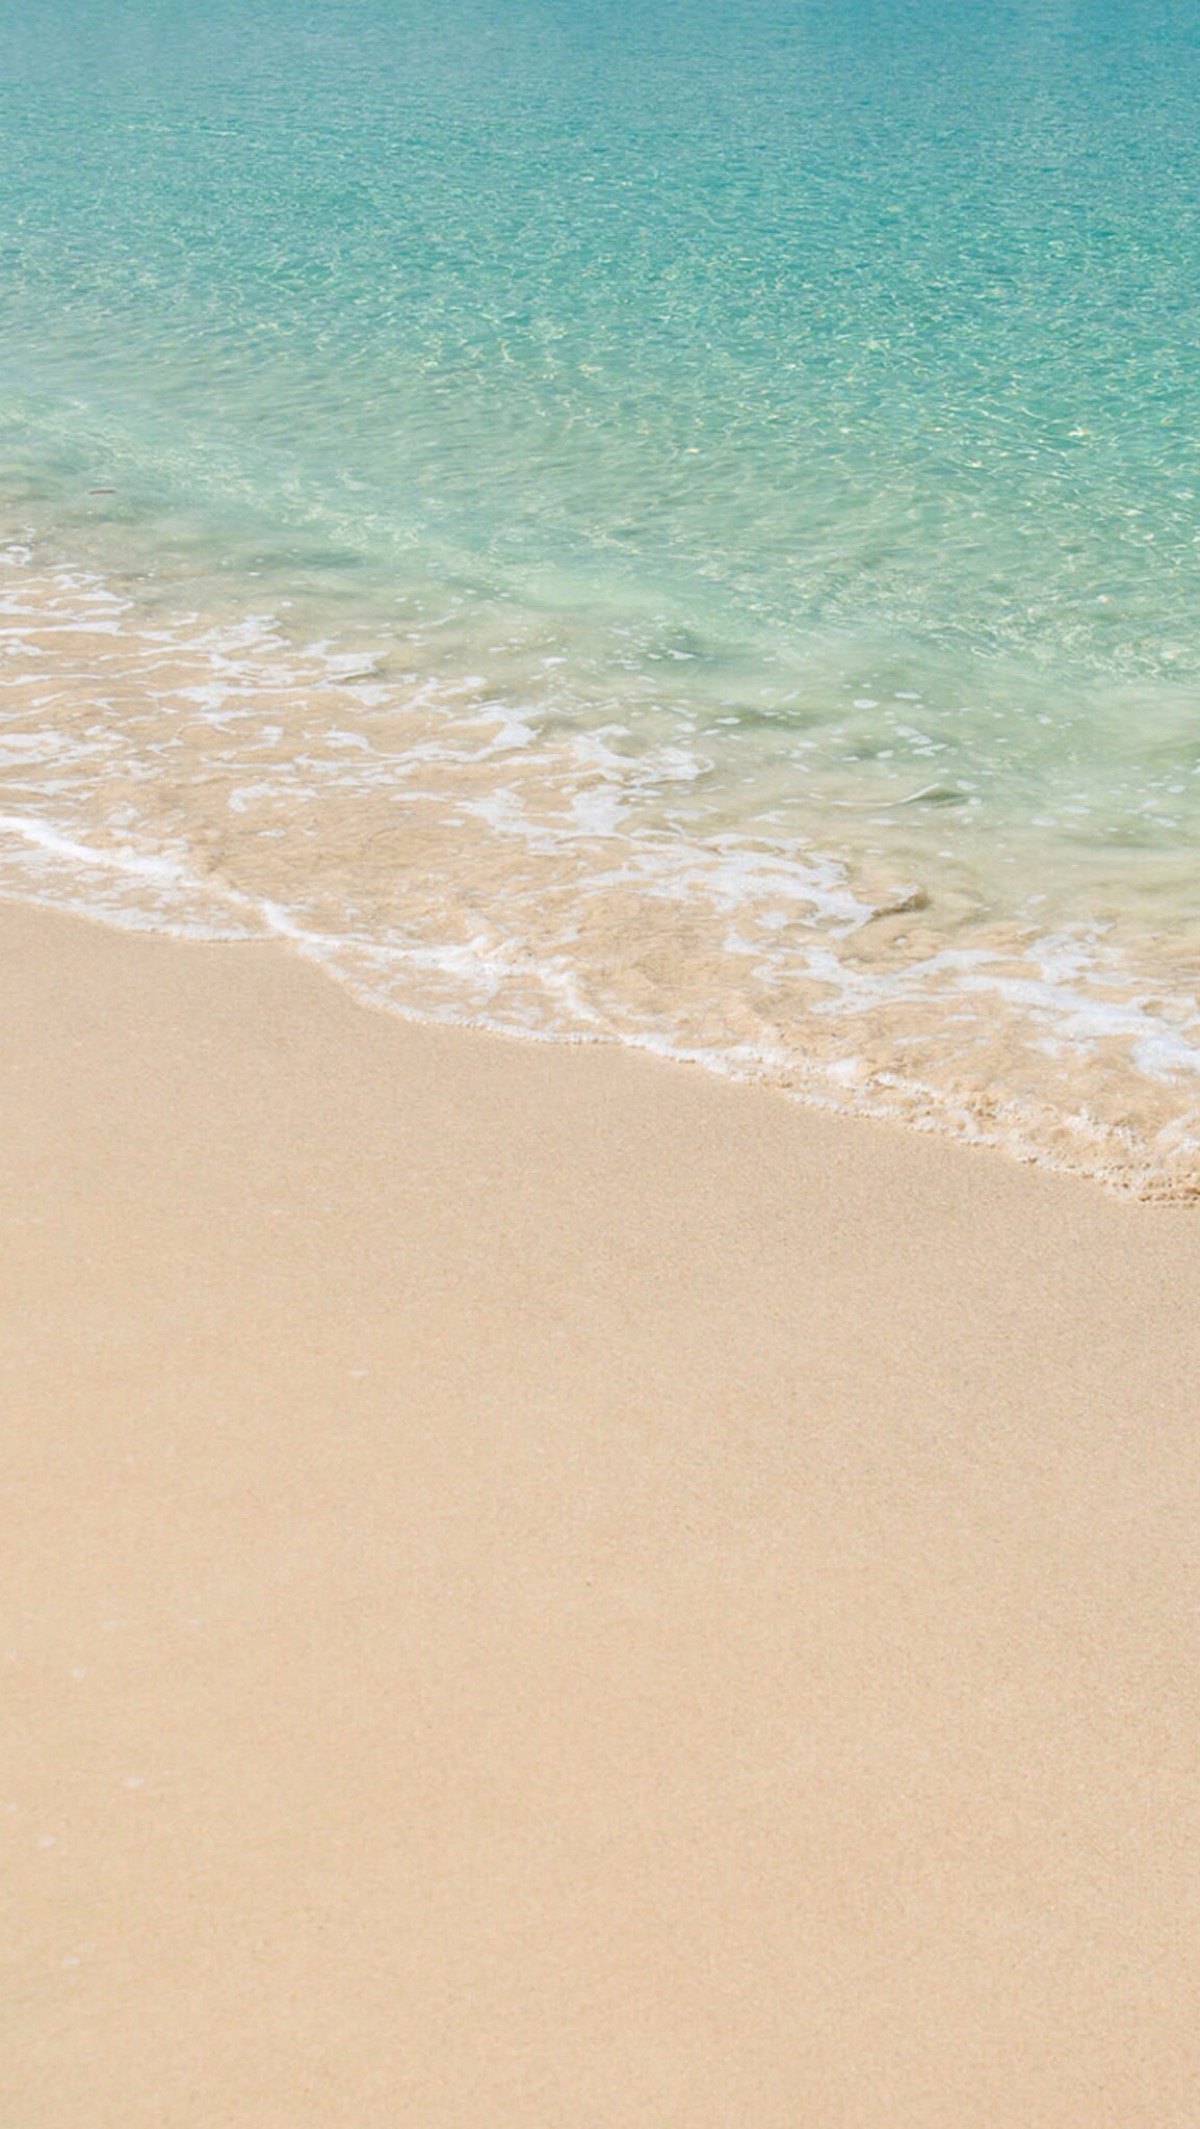 唯美自然风景 蓝天碧海 海洋 沙滩 唯美风景 iphone手机壁纸 唯美壁纸